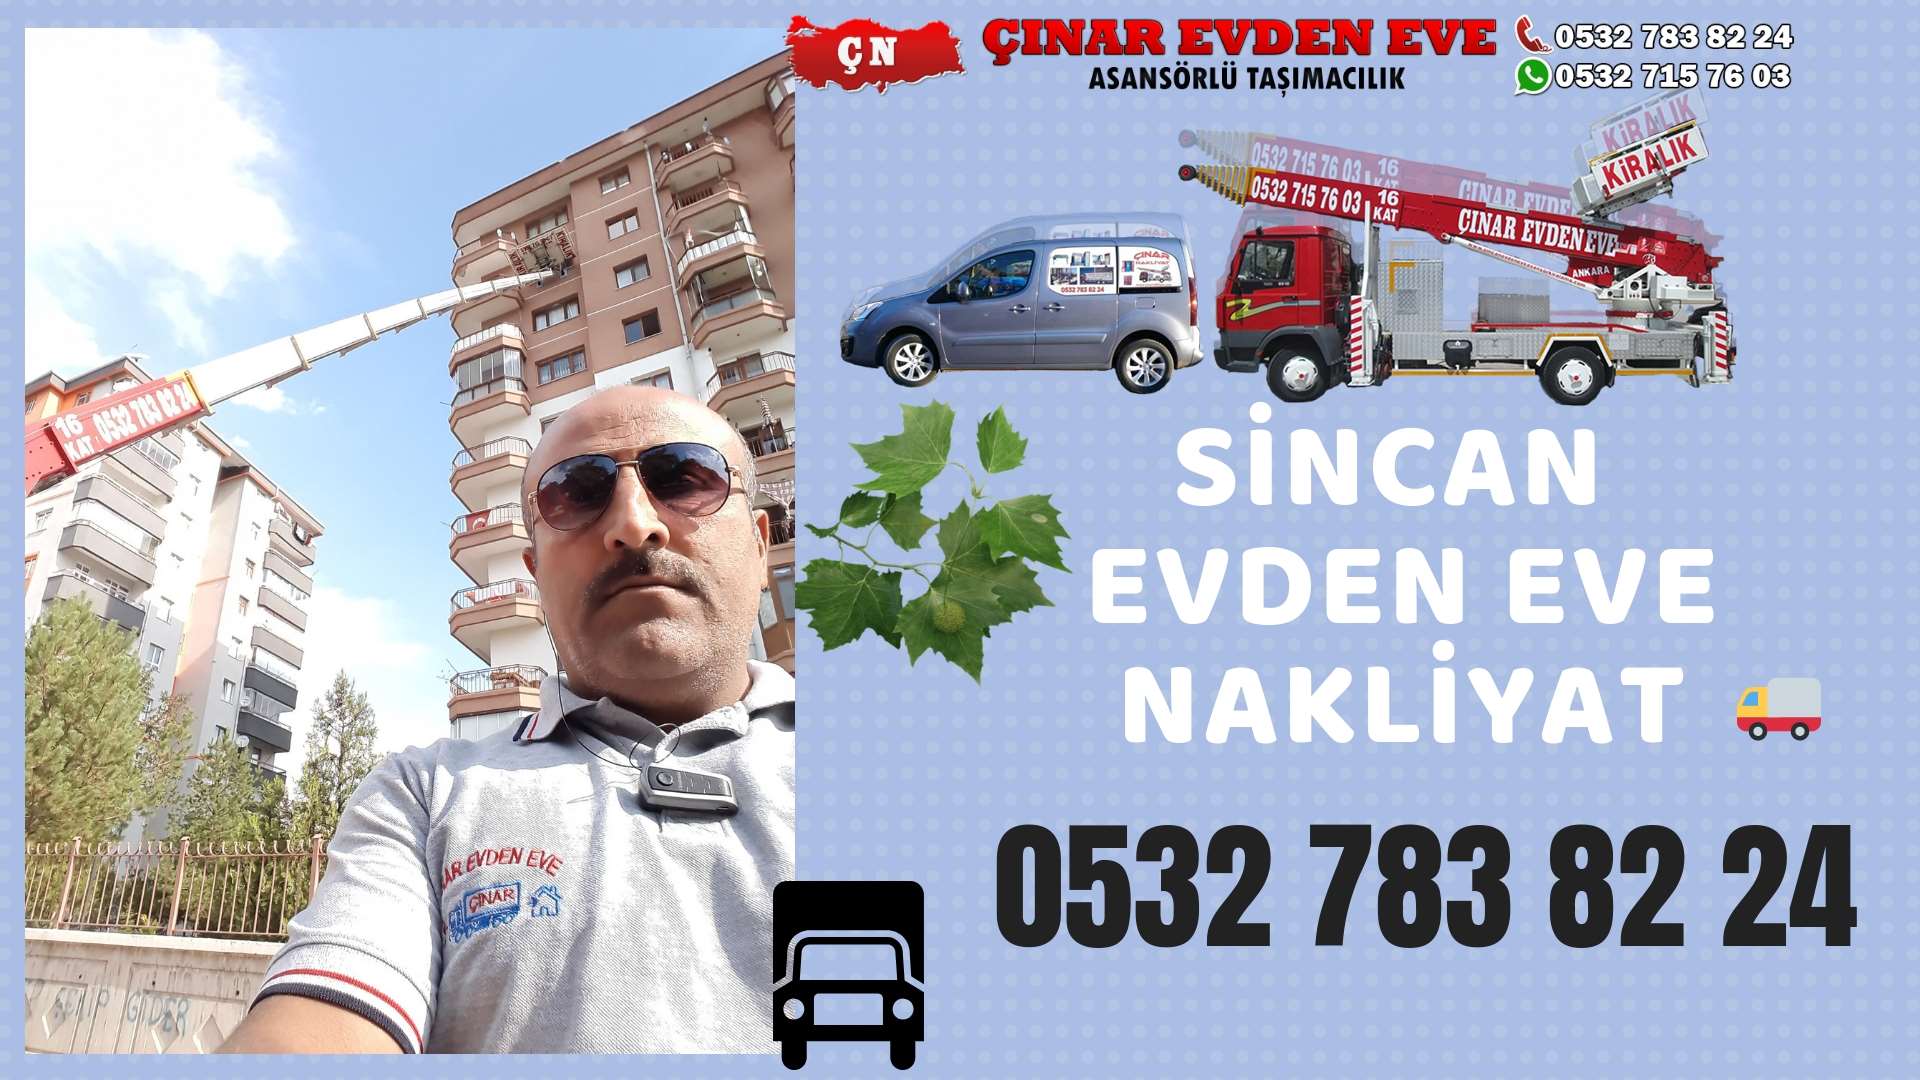 Ankara Çayyolu Evden Eve Nakliyat, Asansörlü Taşımacılık, Ofis / İş Yeri Taşıma 0532 715 76 03